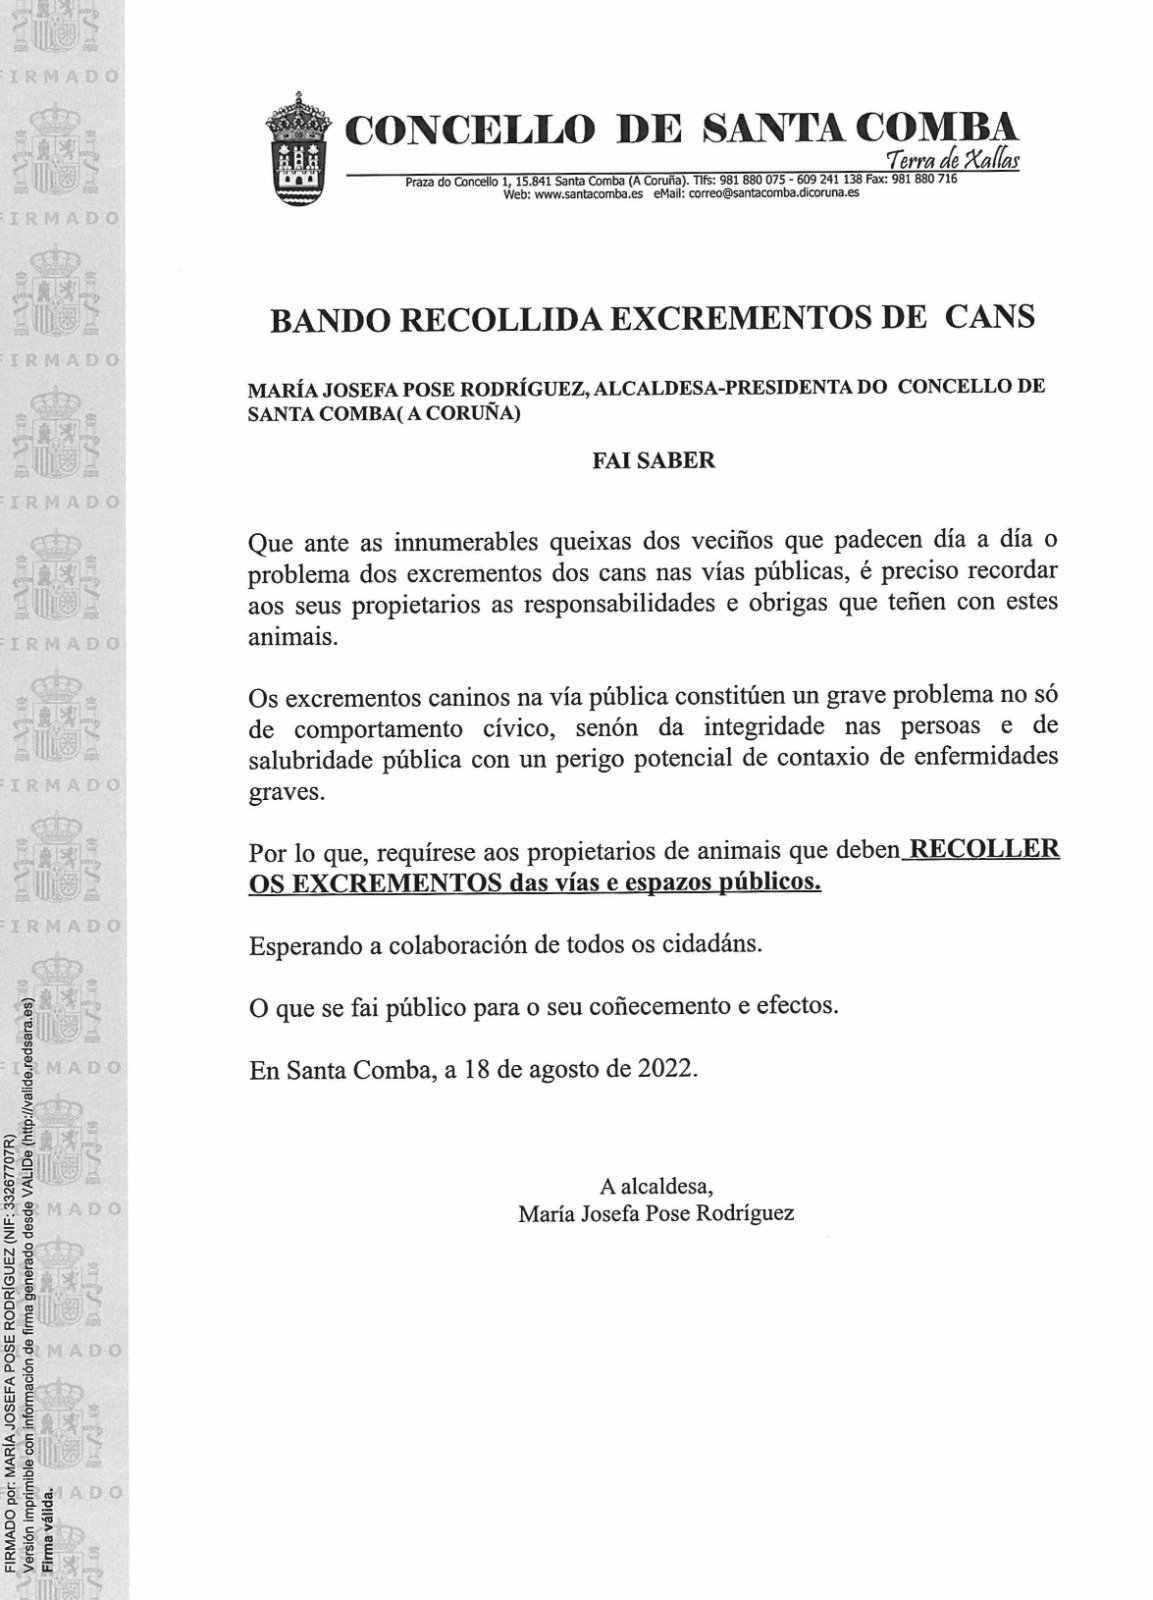 BANDO RECOLLIDA EXCREMENTOS DE CANS